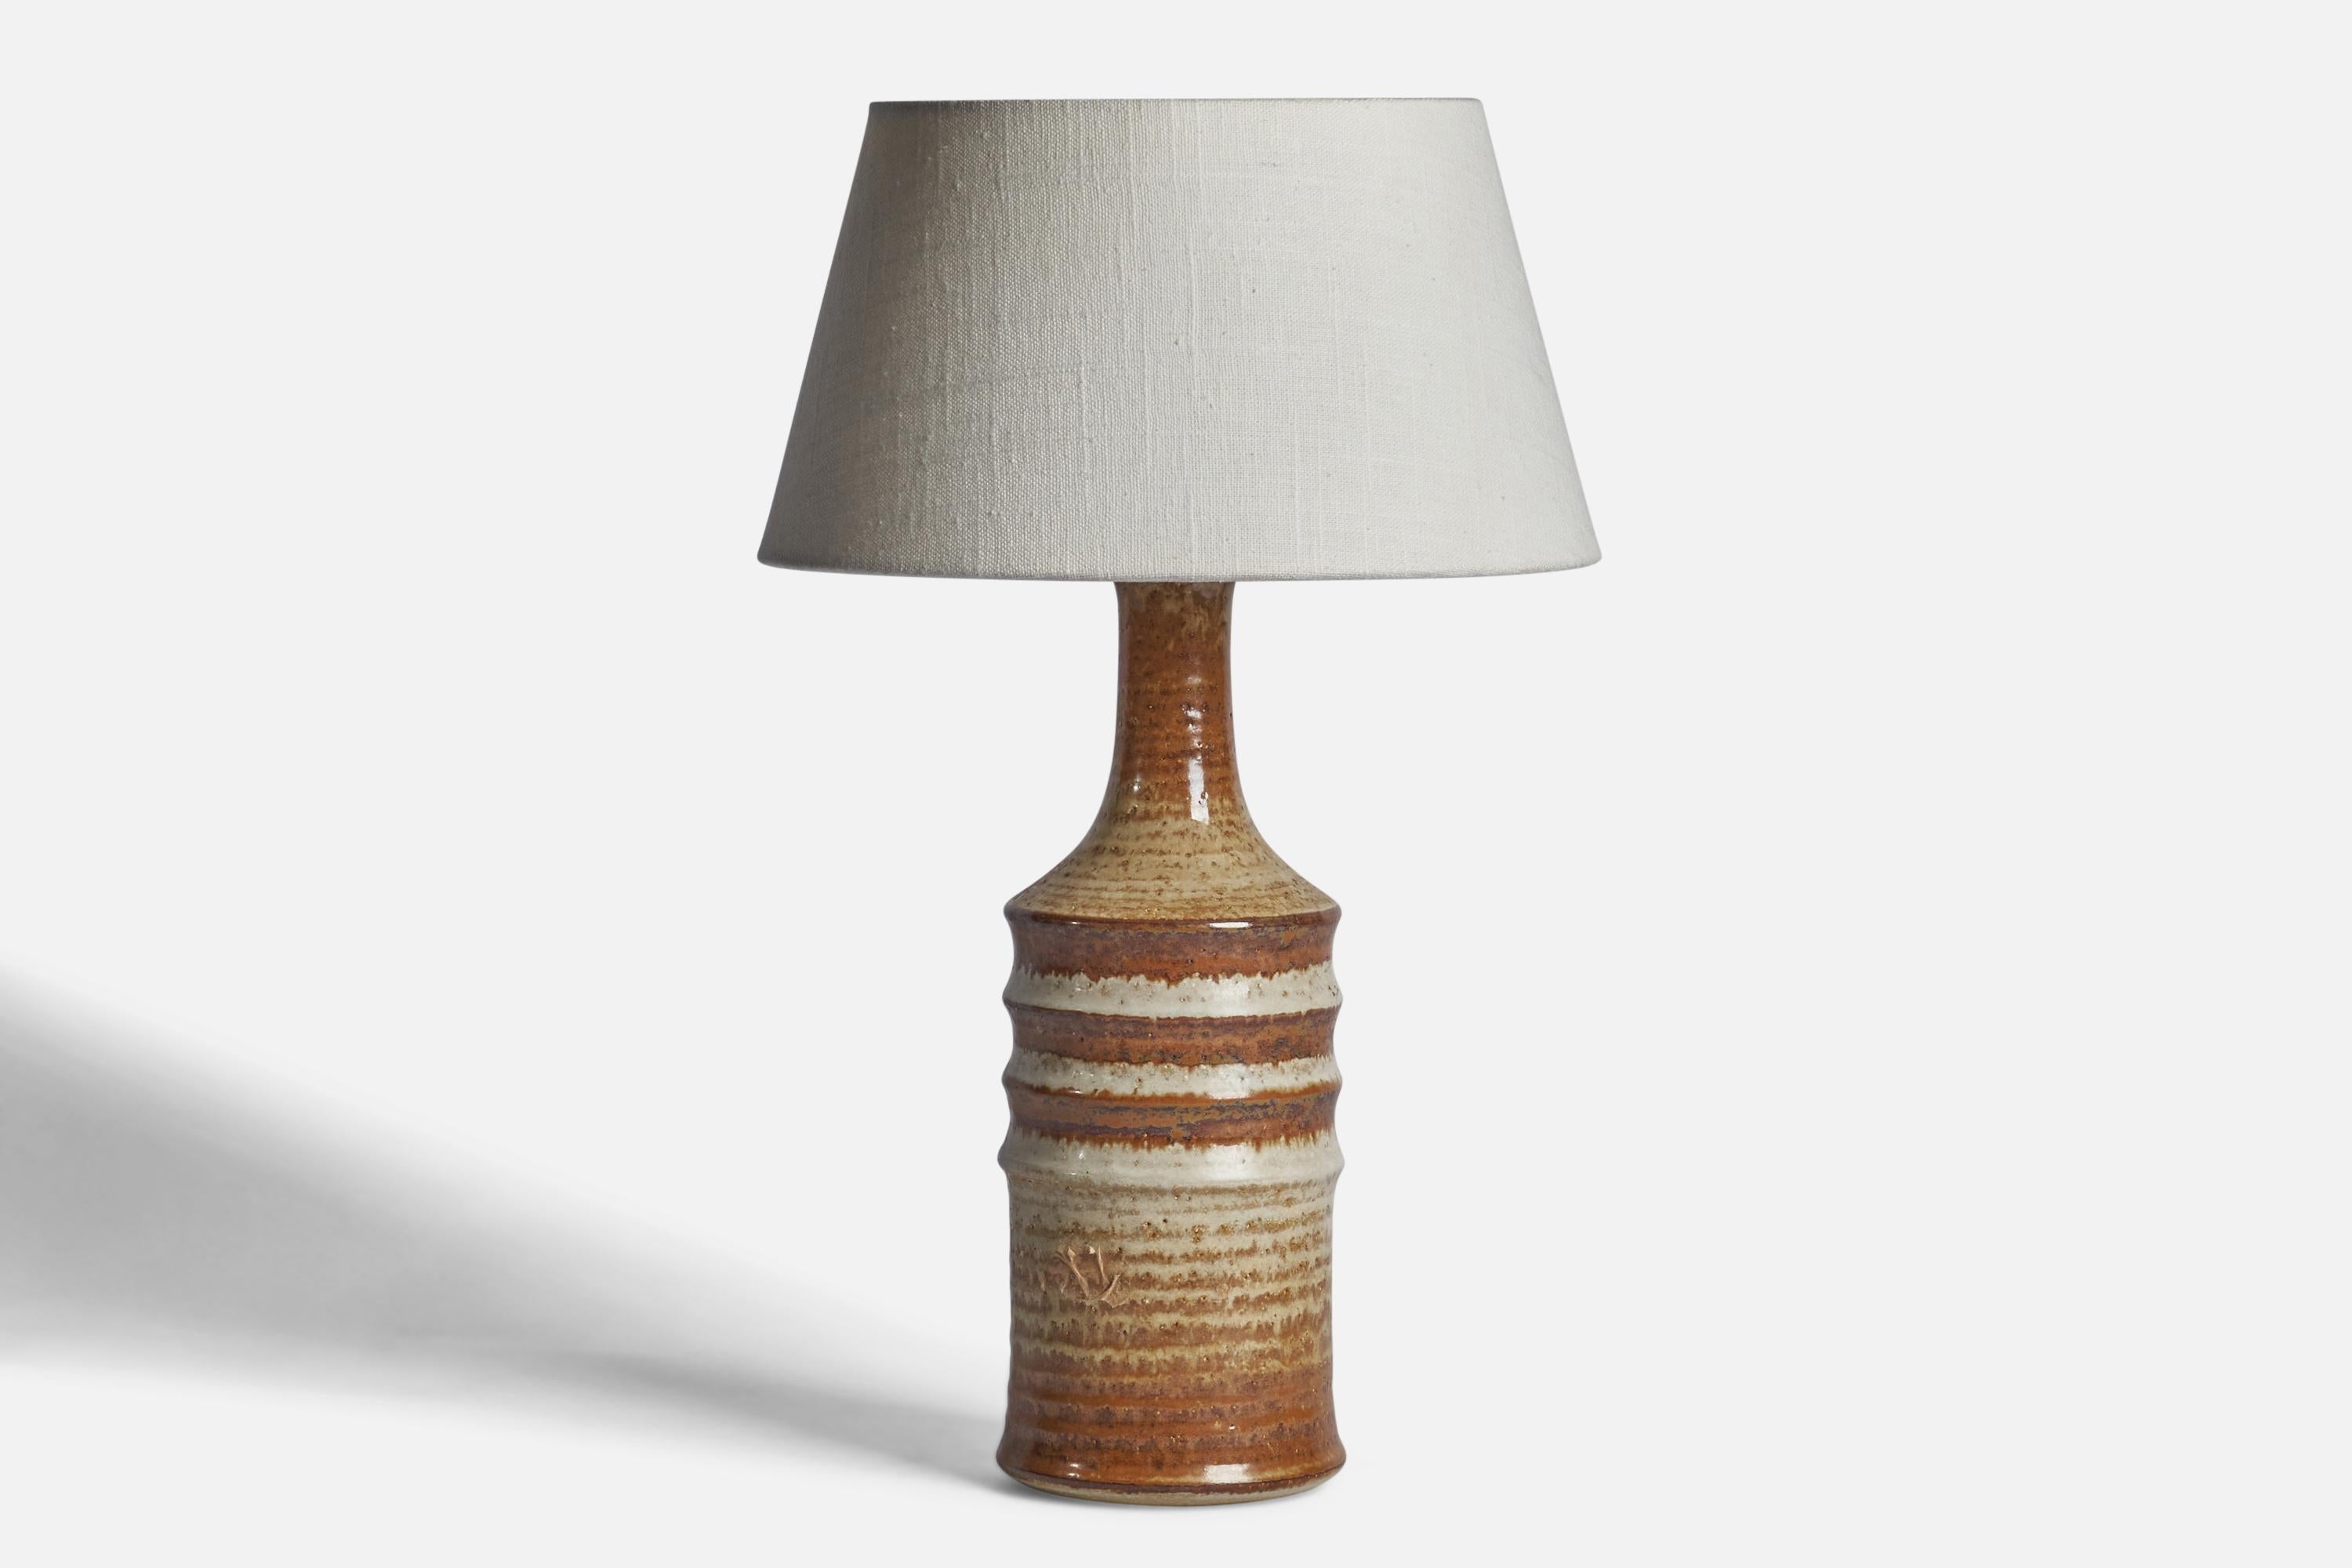 Lampe de table en grès émaillé brun et beige, conçue et produite par Søholm, Danemark, années 1960.

Dimensions de la lampe (pouces) : 13.5